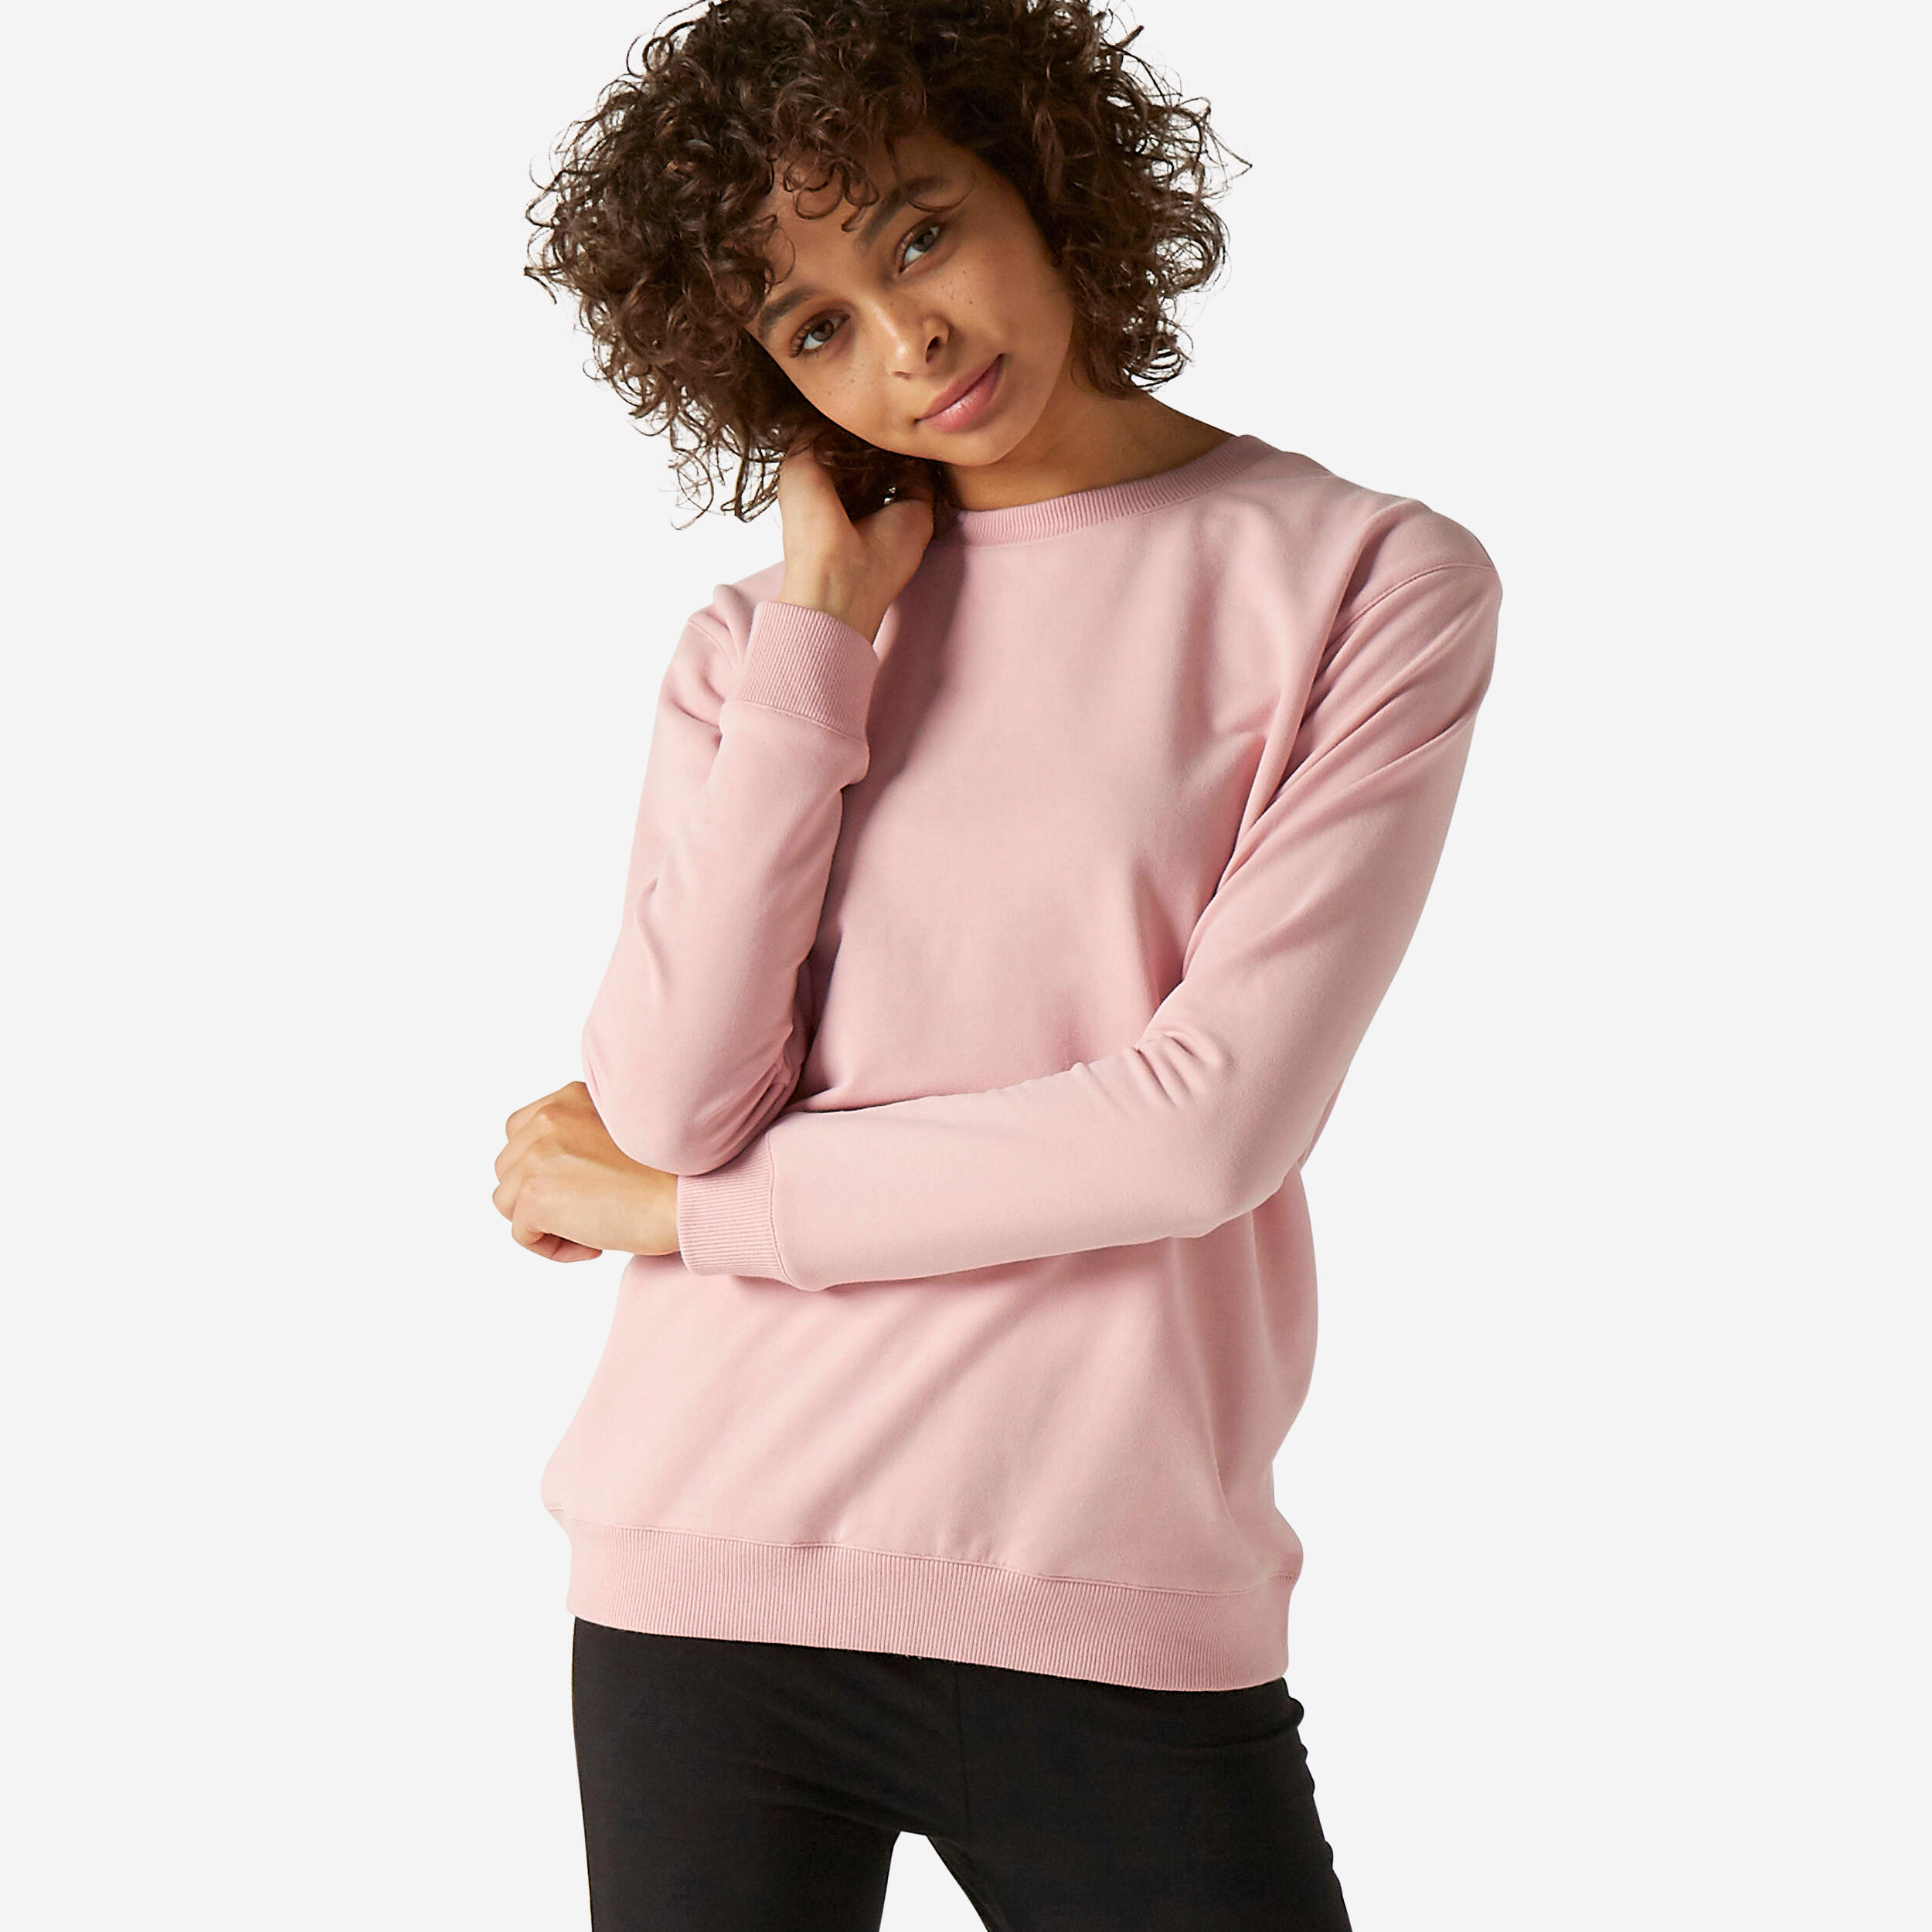 Women's Fitness Sweatshirt 100 - Pink 1/4